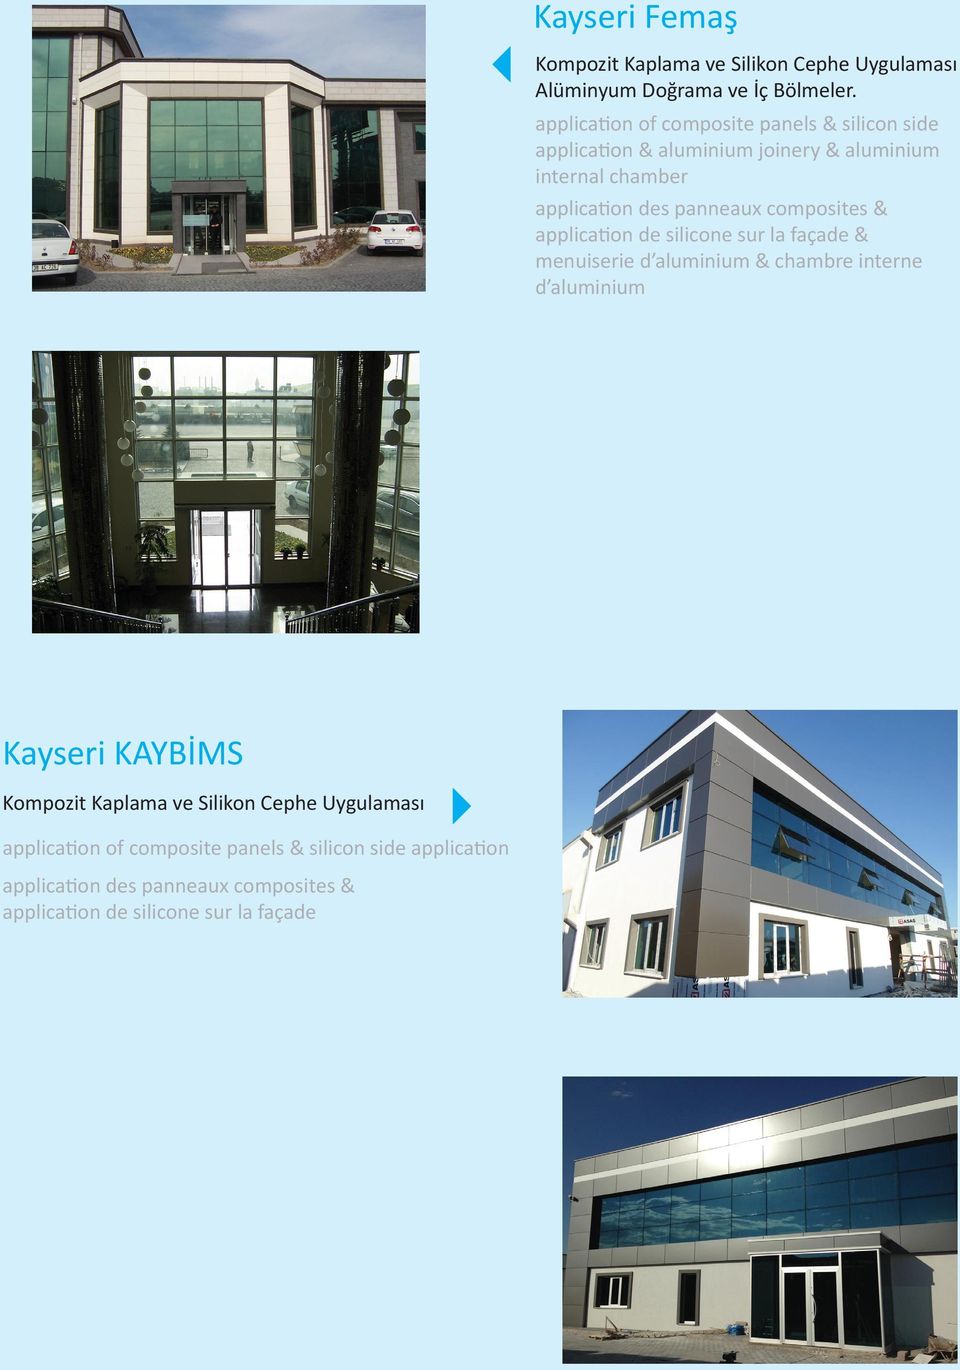 joinery & aluminium internal chamber & menuiserie d aluminium & chambre